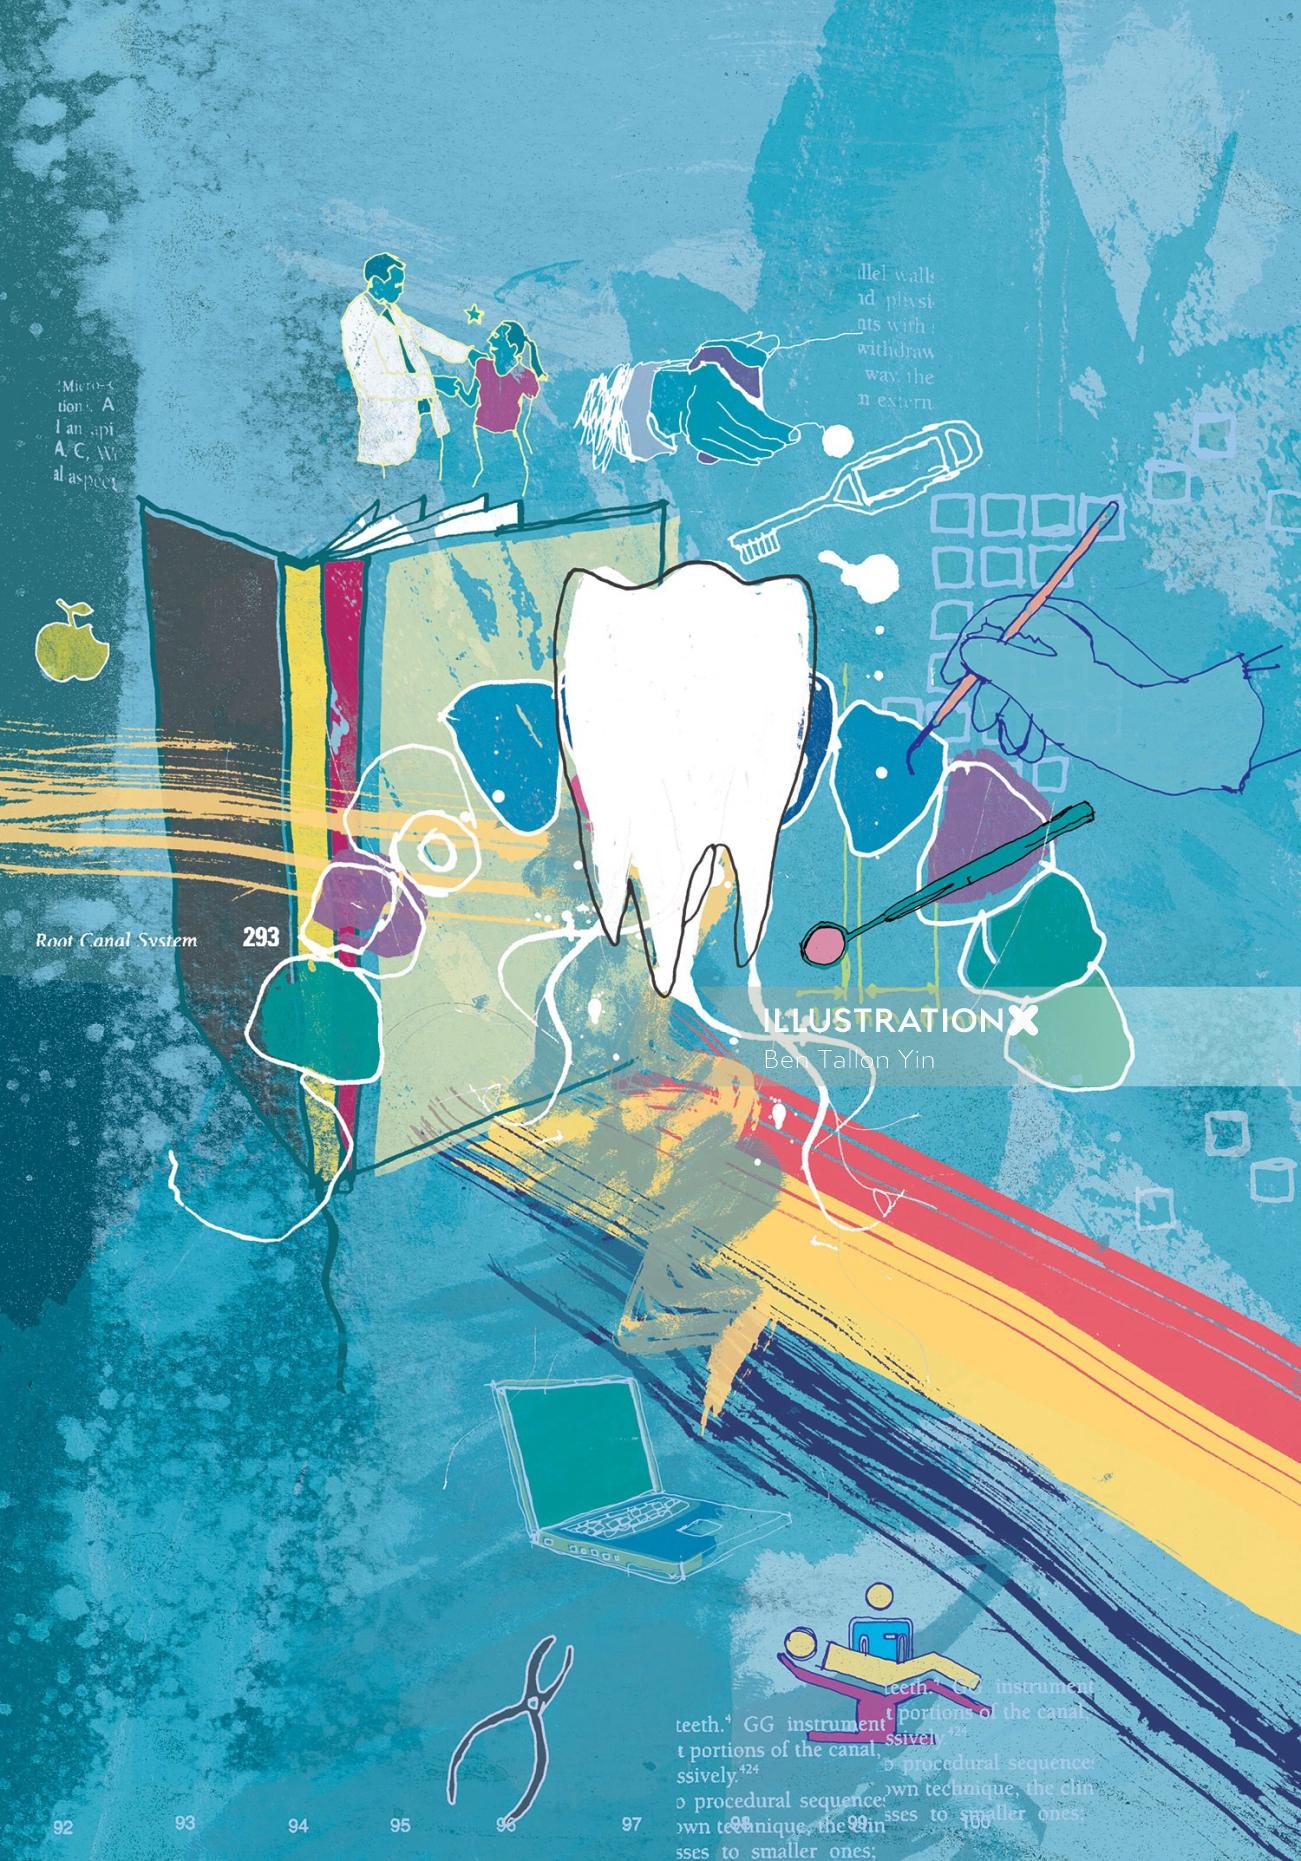 Illustration de couverture de la British Dental Association